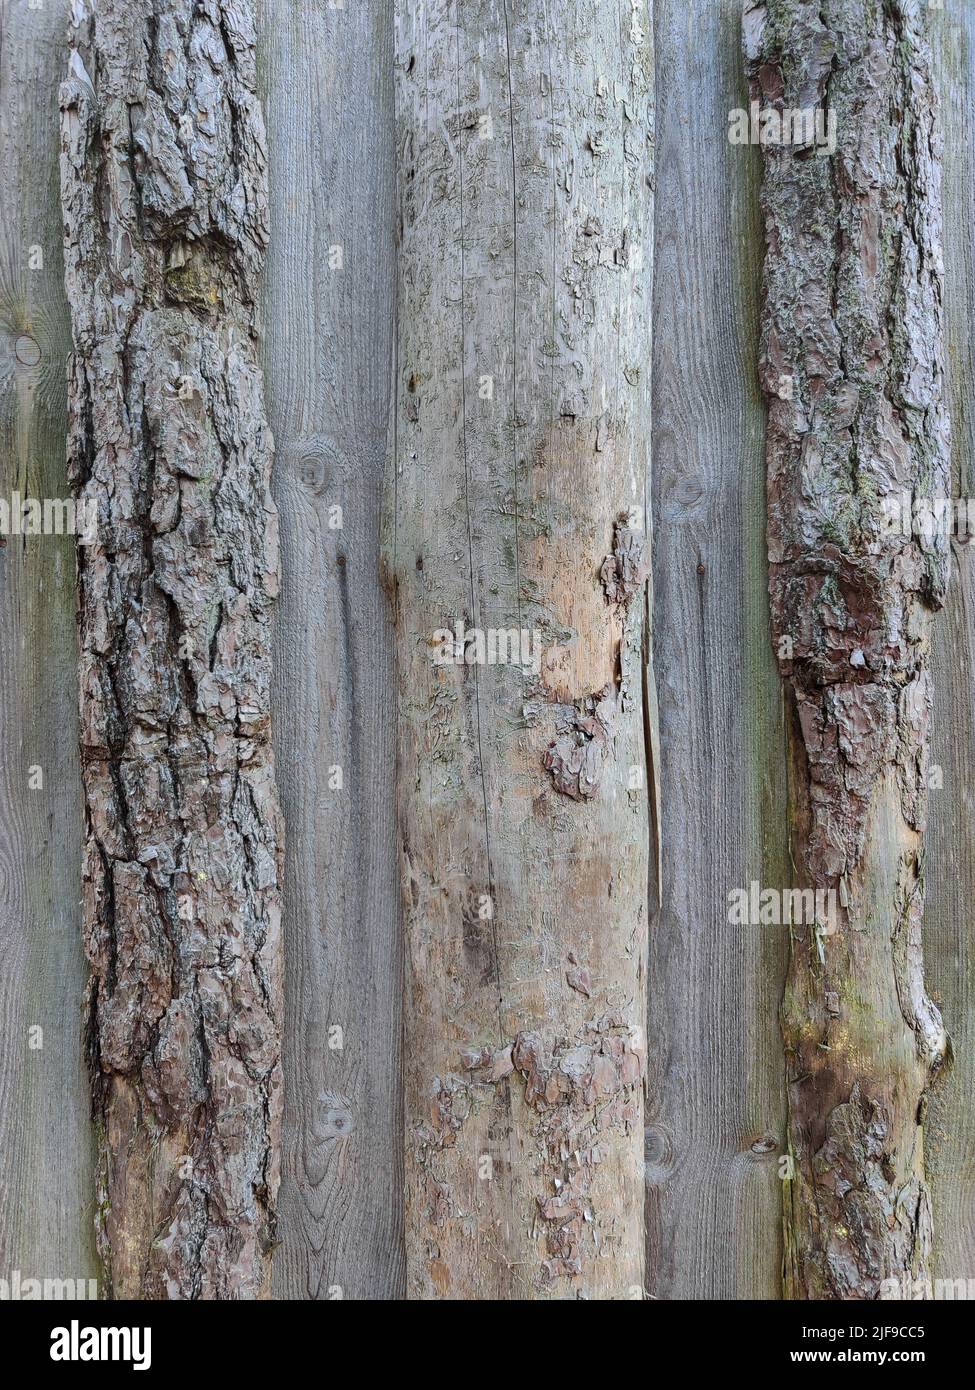 Wand aus unbehandeltem Holz gebaut. Alte Protokollstruktur. Vertikale Holzplanke Hintergrund. Stockfoto